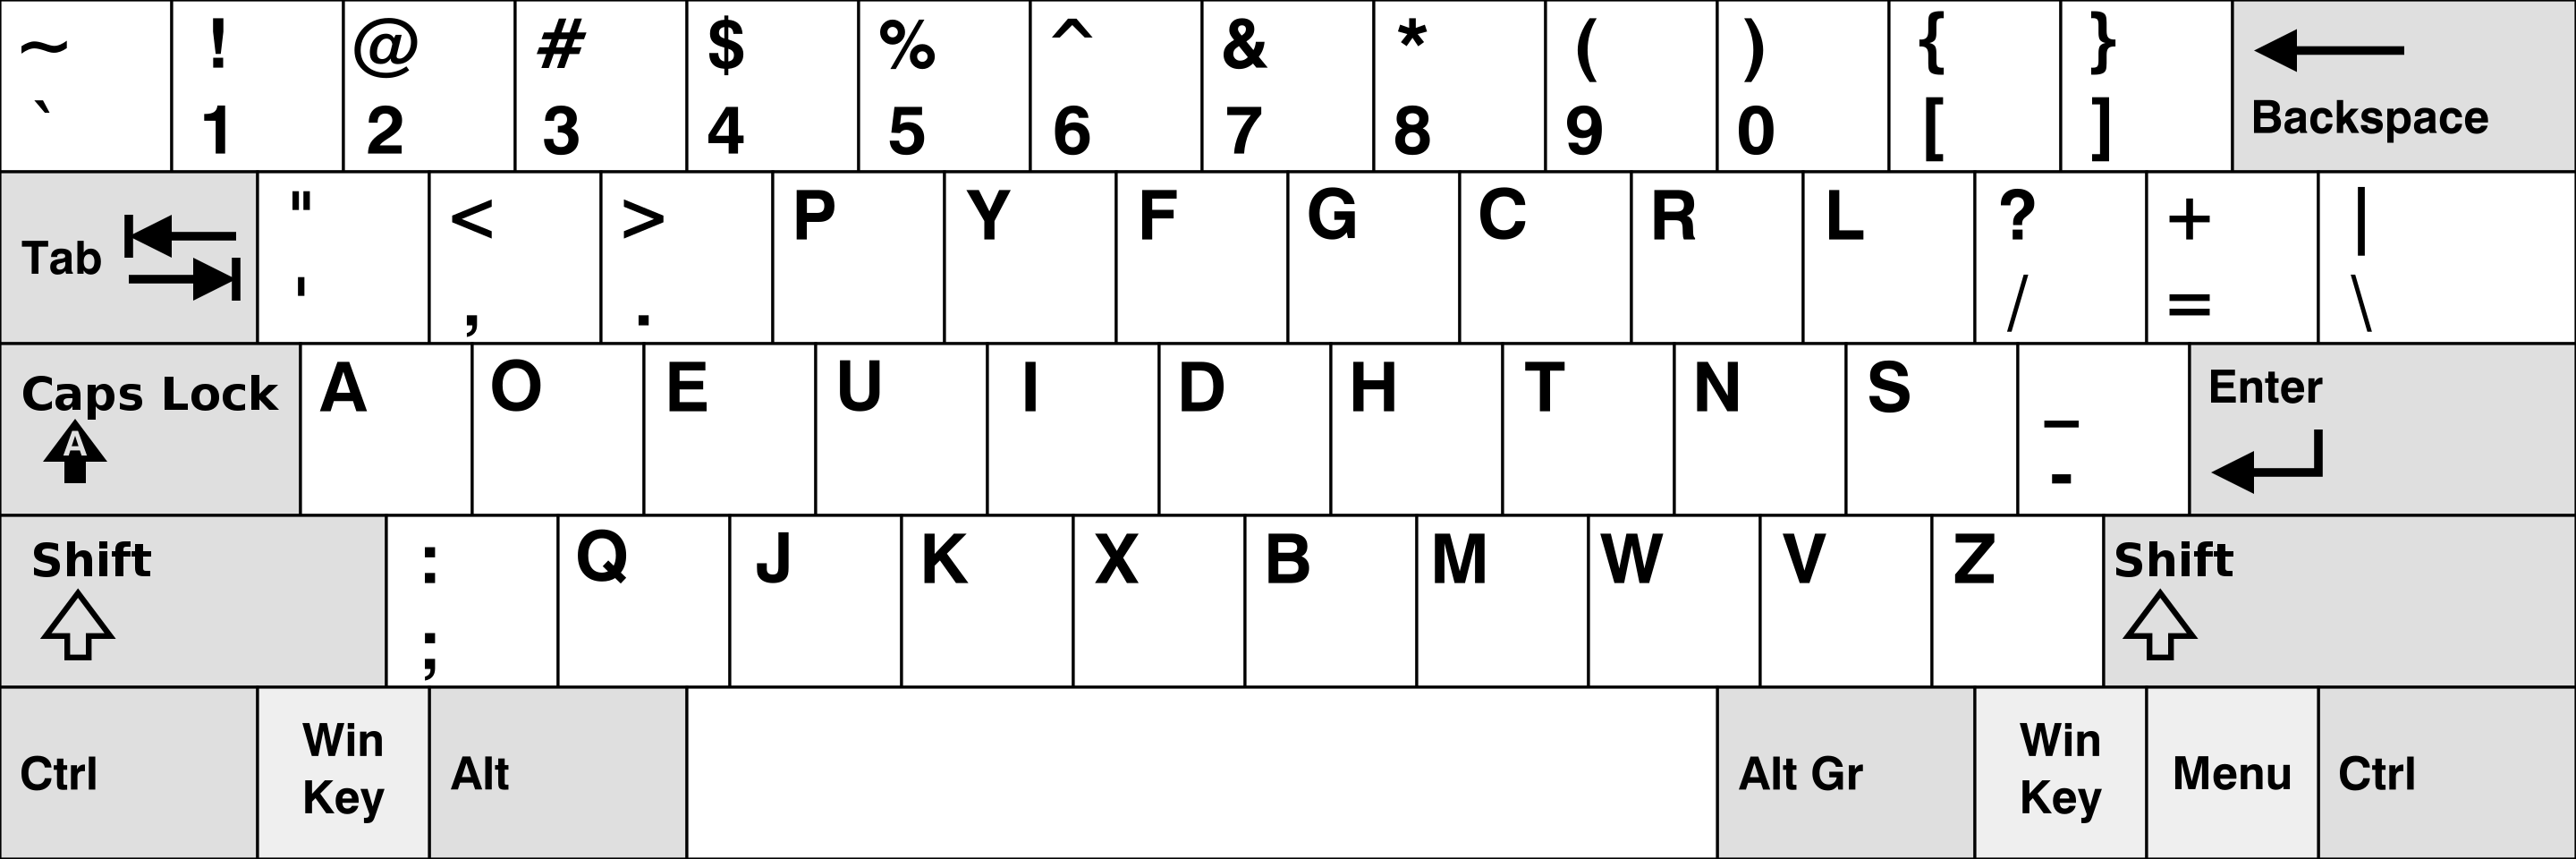 Dvorak 键盘于 1936 由 Auguse Dvorak 教授提出，这款键盘的支持者认为，它的键位分布相比 QWERTY 键盘更符合人体工程学，因此可以提升使用者的打字速度，减少肌肉劳损。